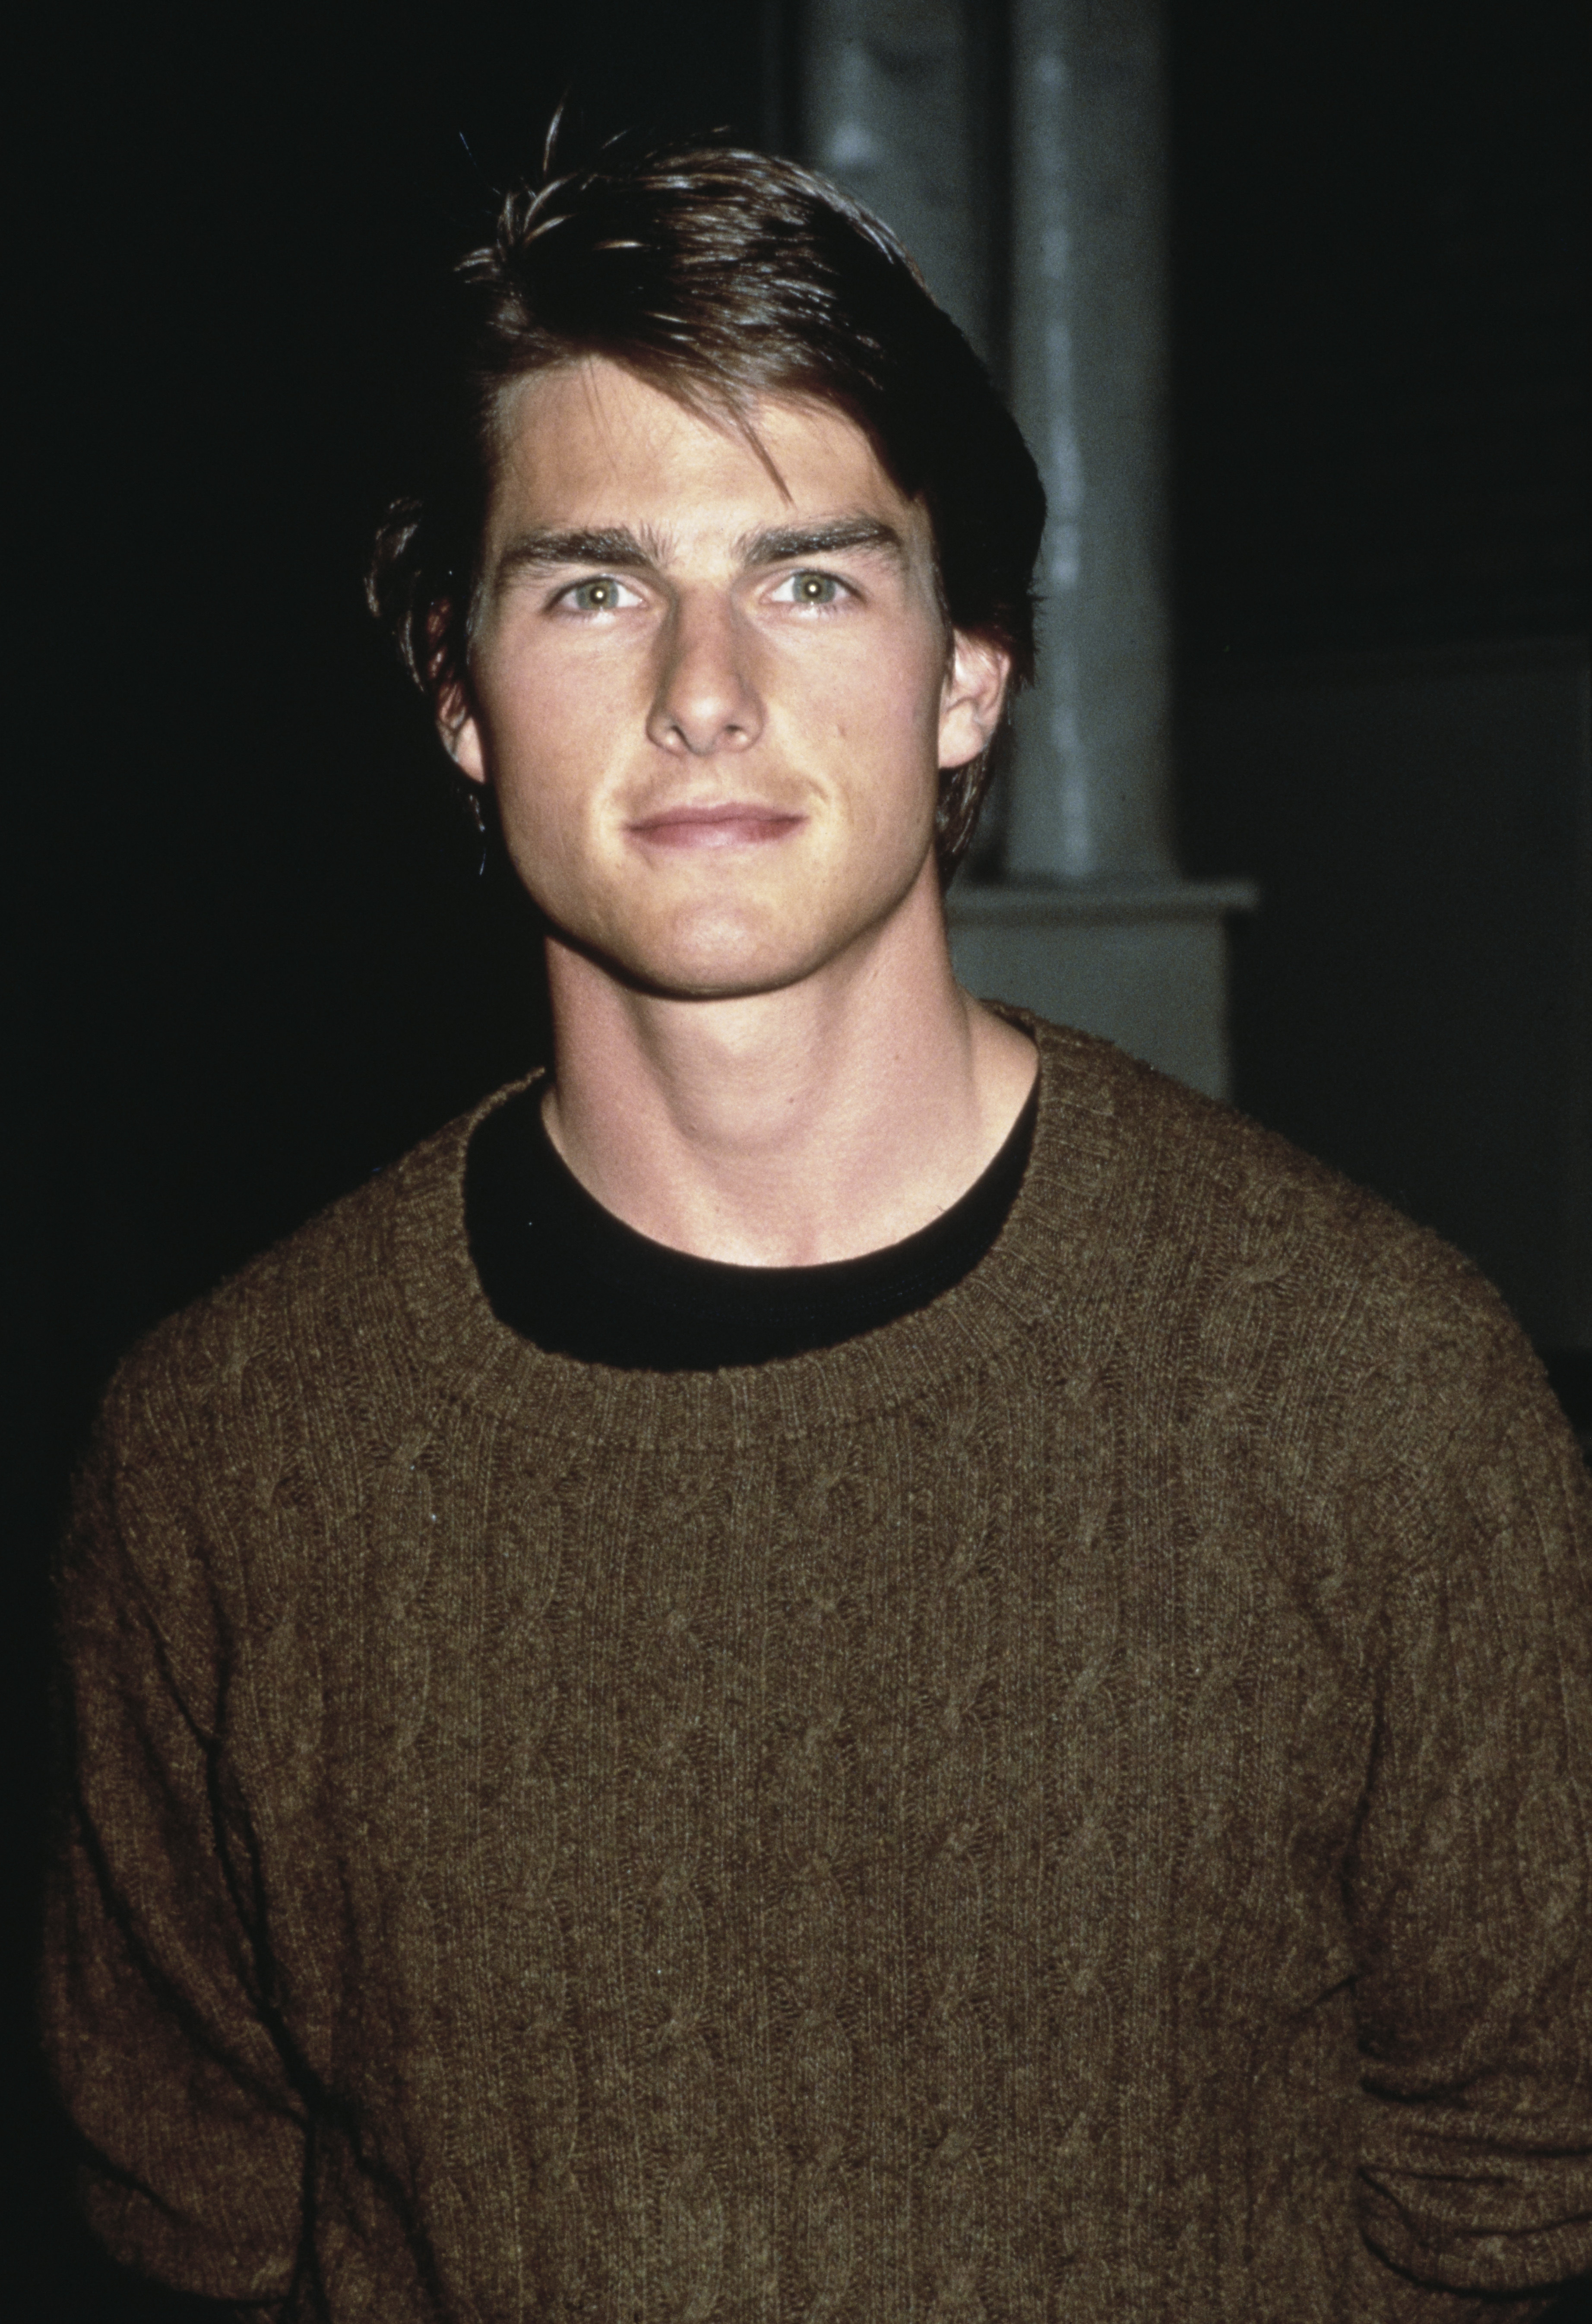 Tom Cruise bei einer Veranstaltung, ca. 1990er Jahre | Quelle: Getty Images